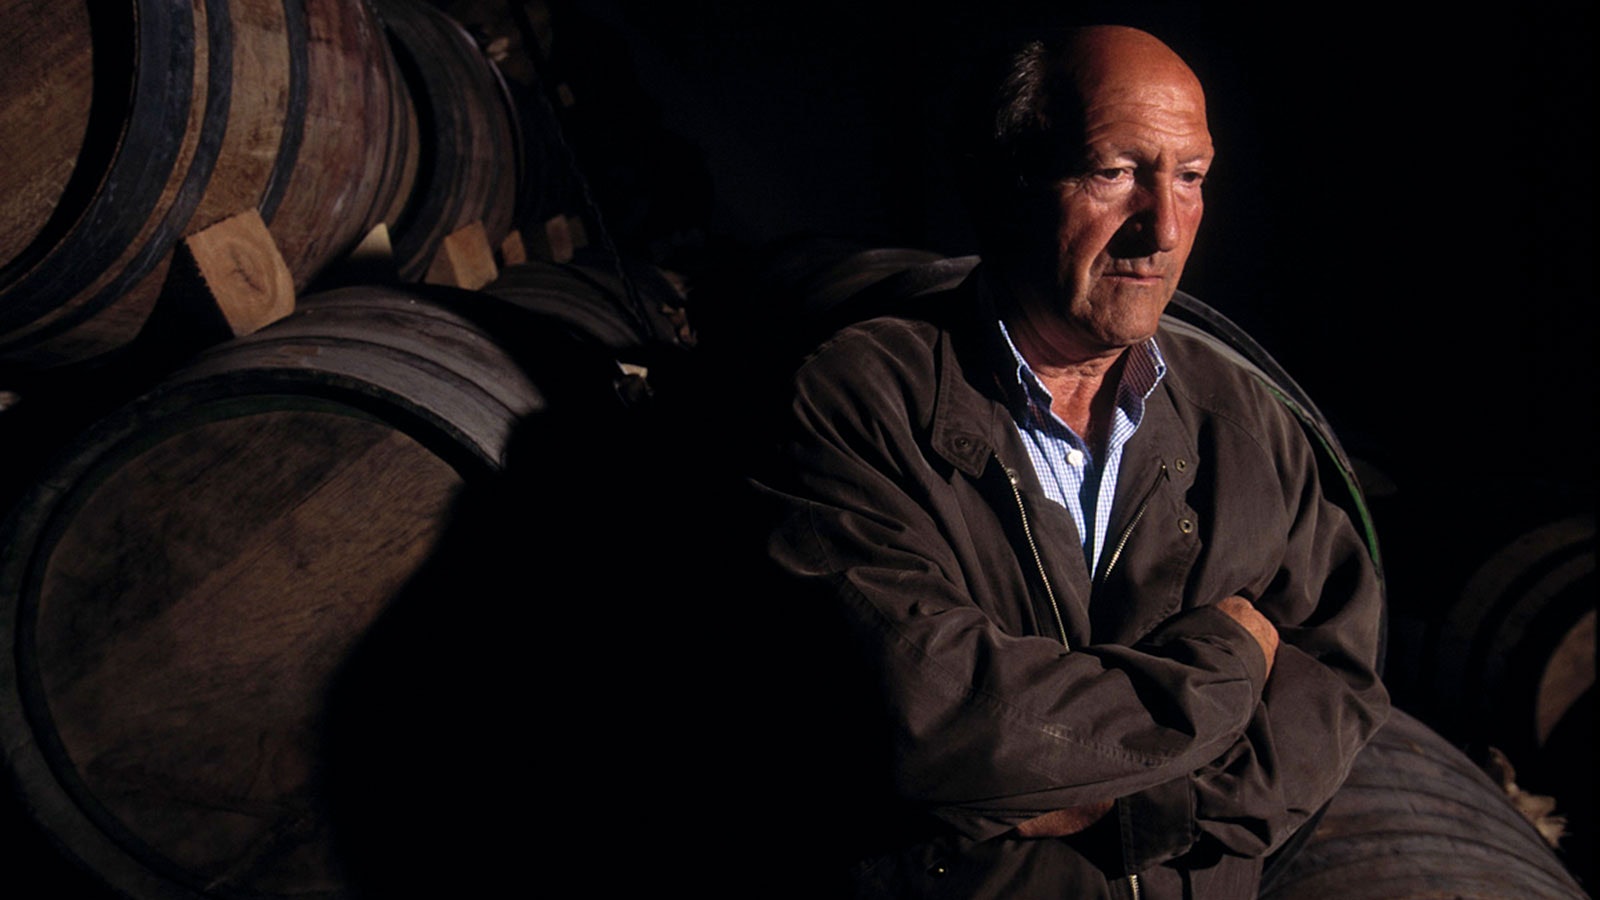  Alejandro Fernández estaba orgulloso de su ciudad natal y su región en España y trabajó para elevar su perfil en el mundo del vino.